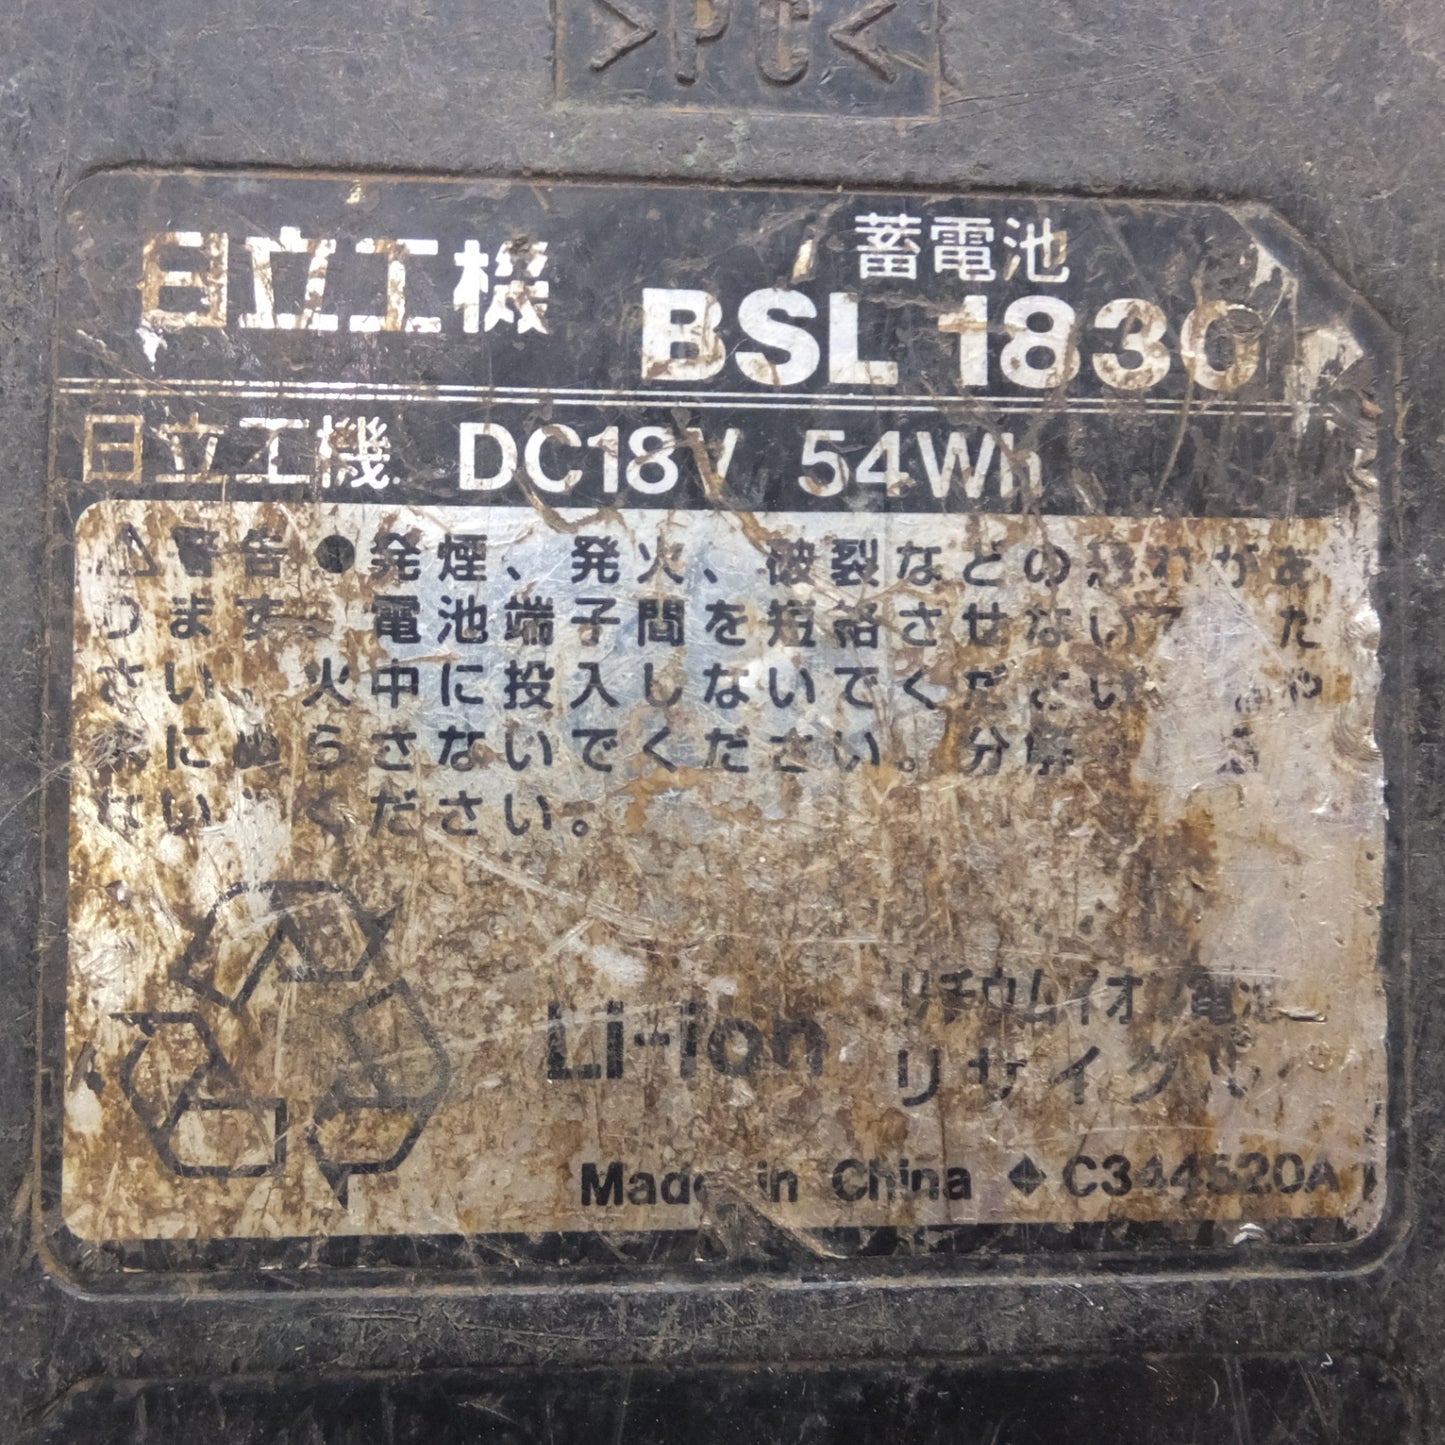 [送料無料] ★日立 HITACHI 蓄電池 BSL1830　DC18V 54Wh Li-ion　2個 セット★